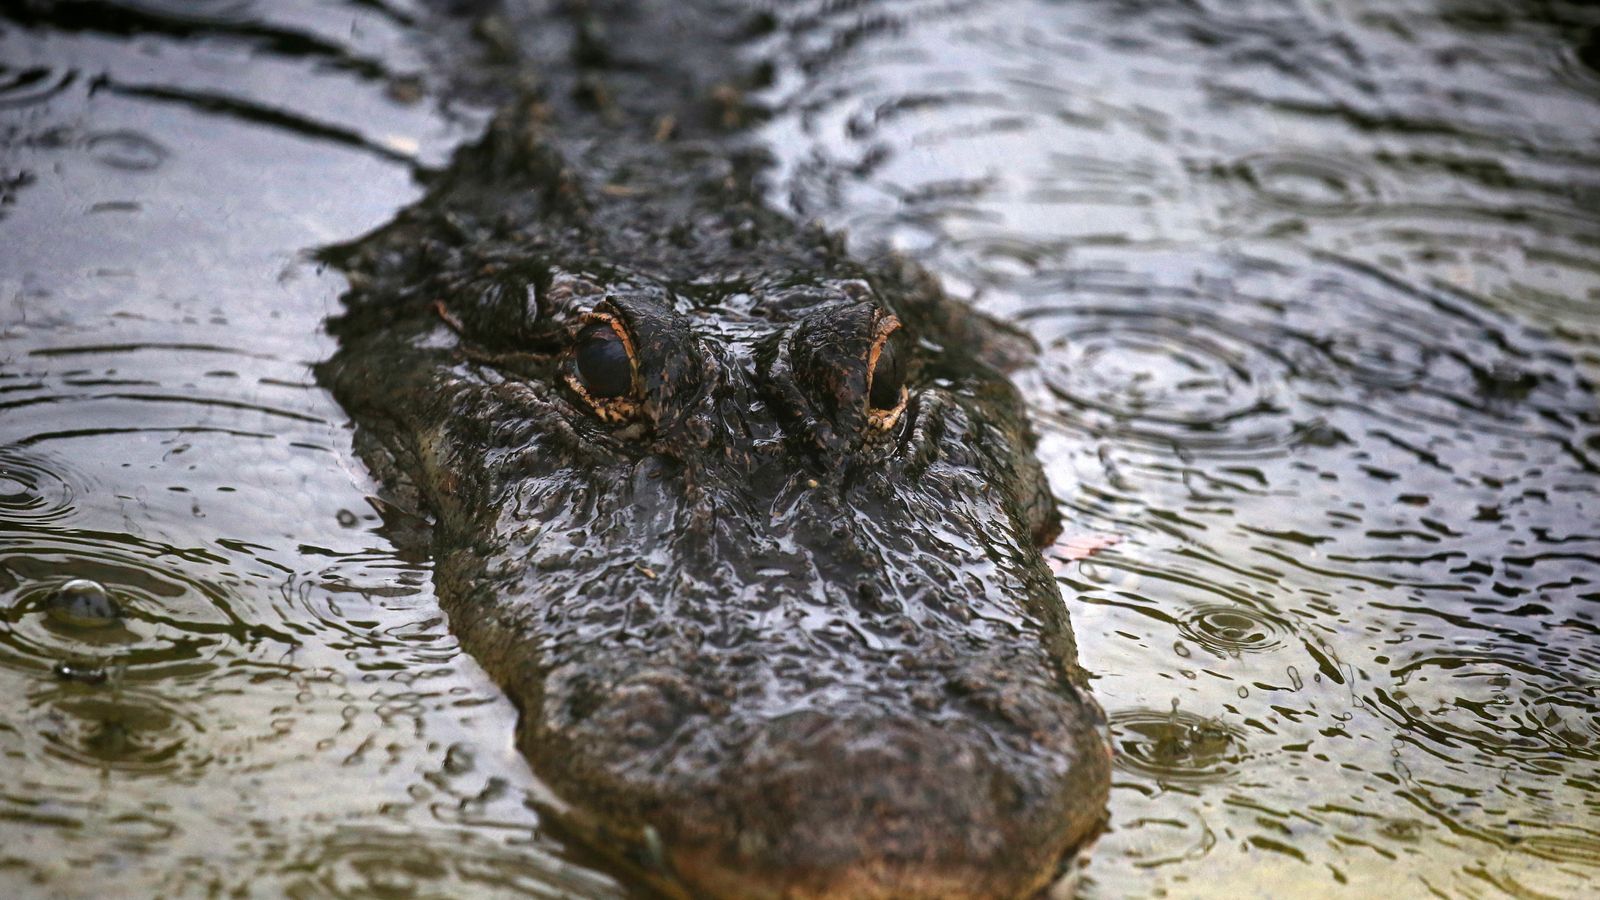 Alligatorangriff in Florida: Frau, 85, getötet, während sie mit einem Hund in der Nähe eines Kanals spazieren ging |  US-Nachrichten